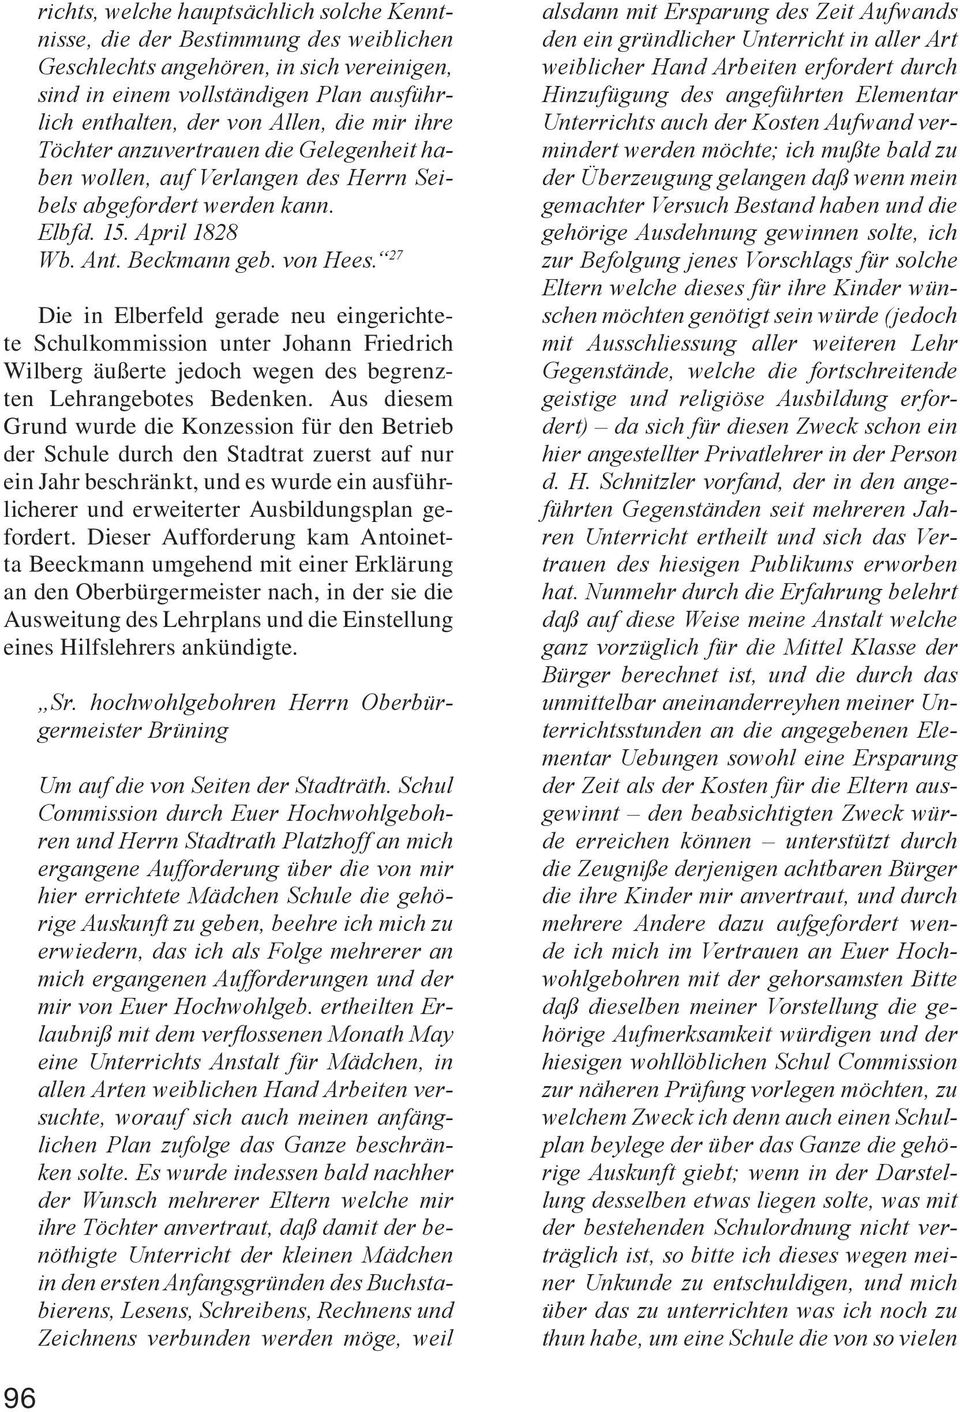 27 Die in Elberfeld gerade neu eingerichtete Schulkommission unter Johann Friedrich Wilberg äußerte jedoch wegen des begrenzten Lehrangebotes Bedenken.